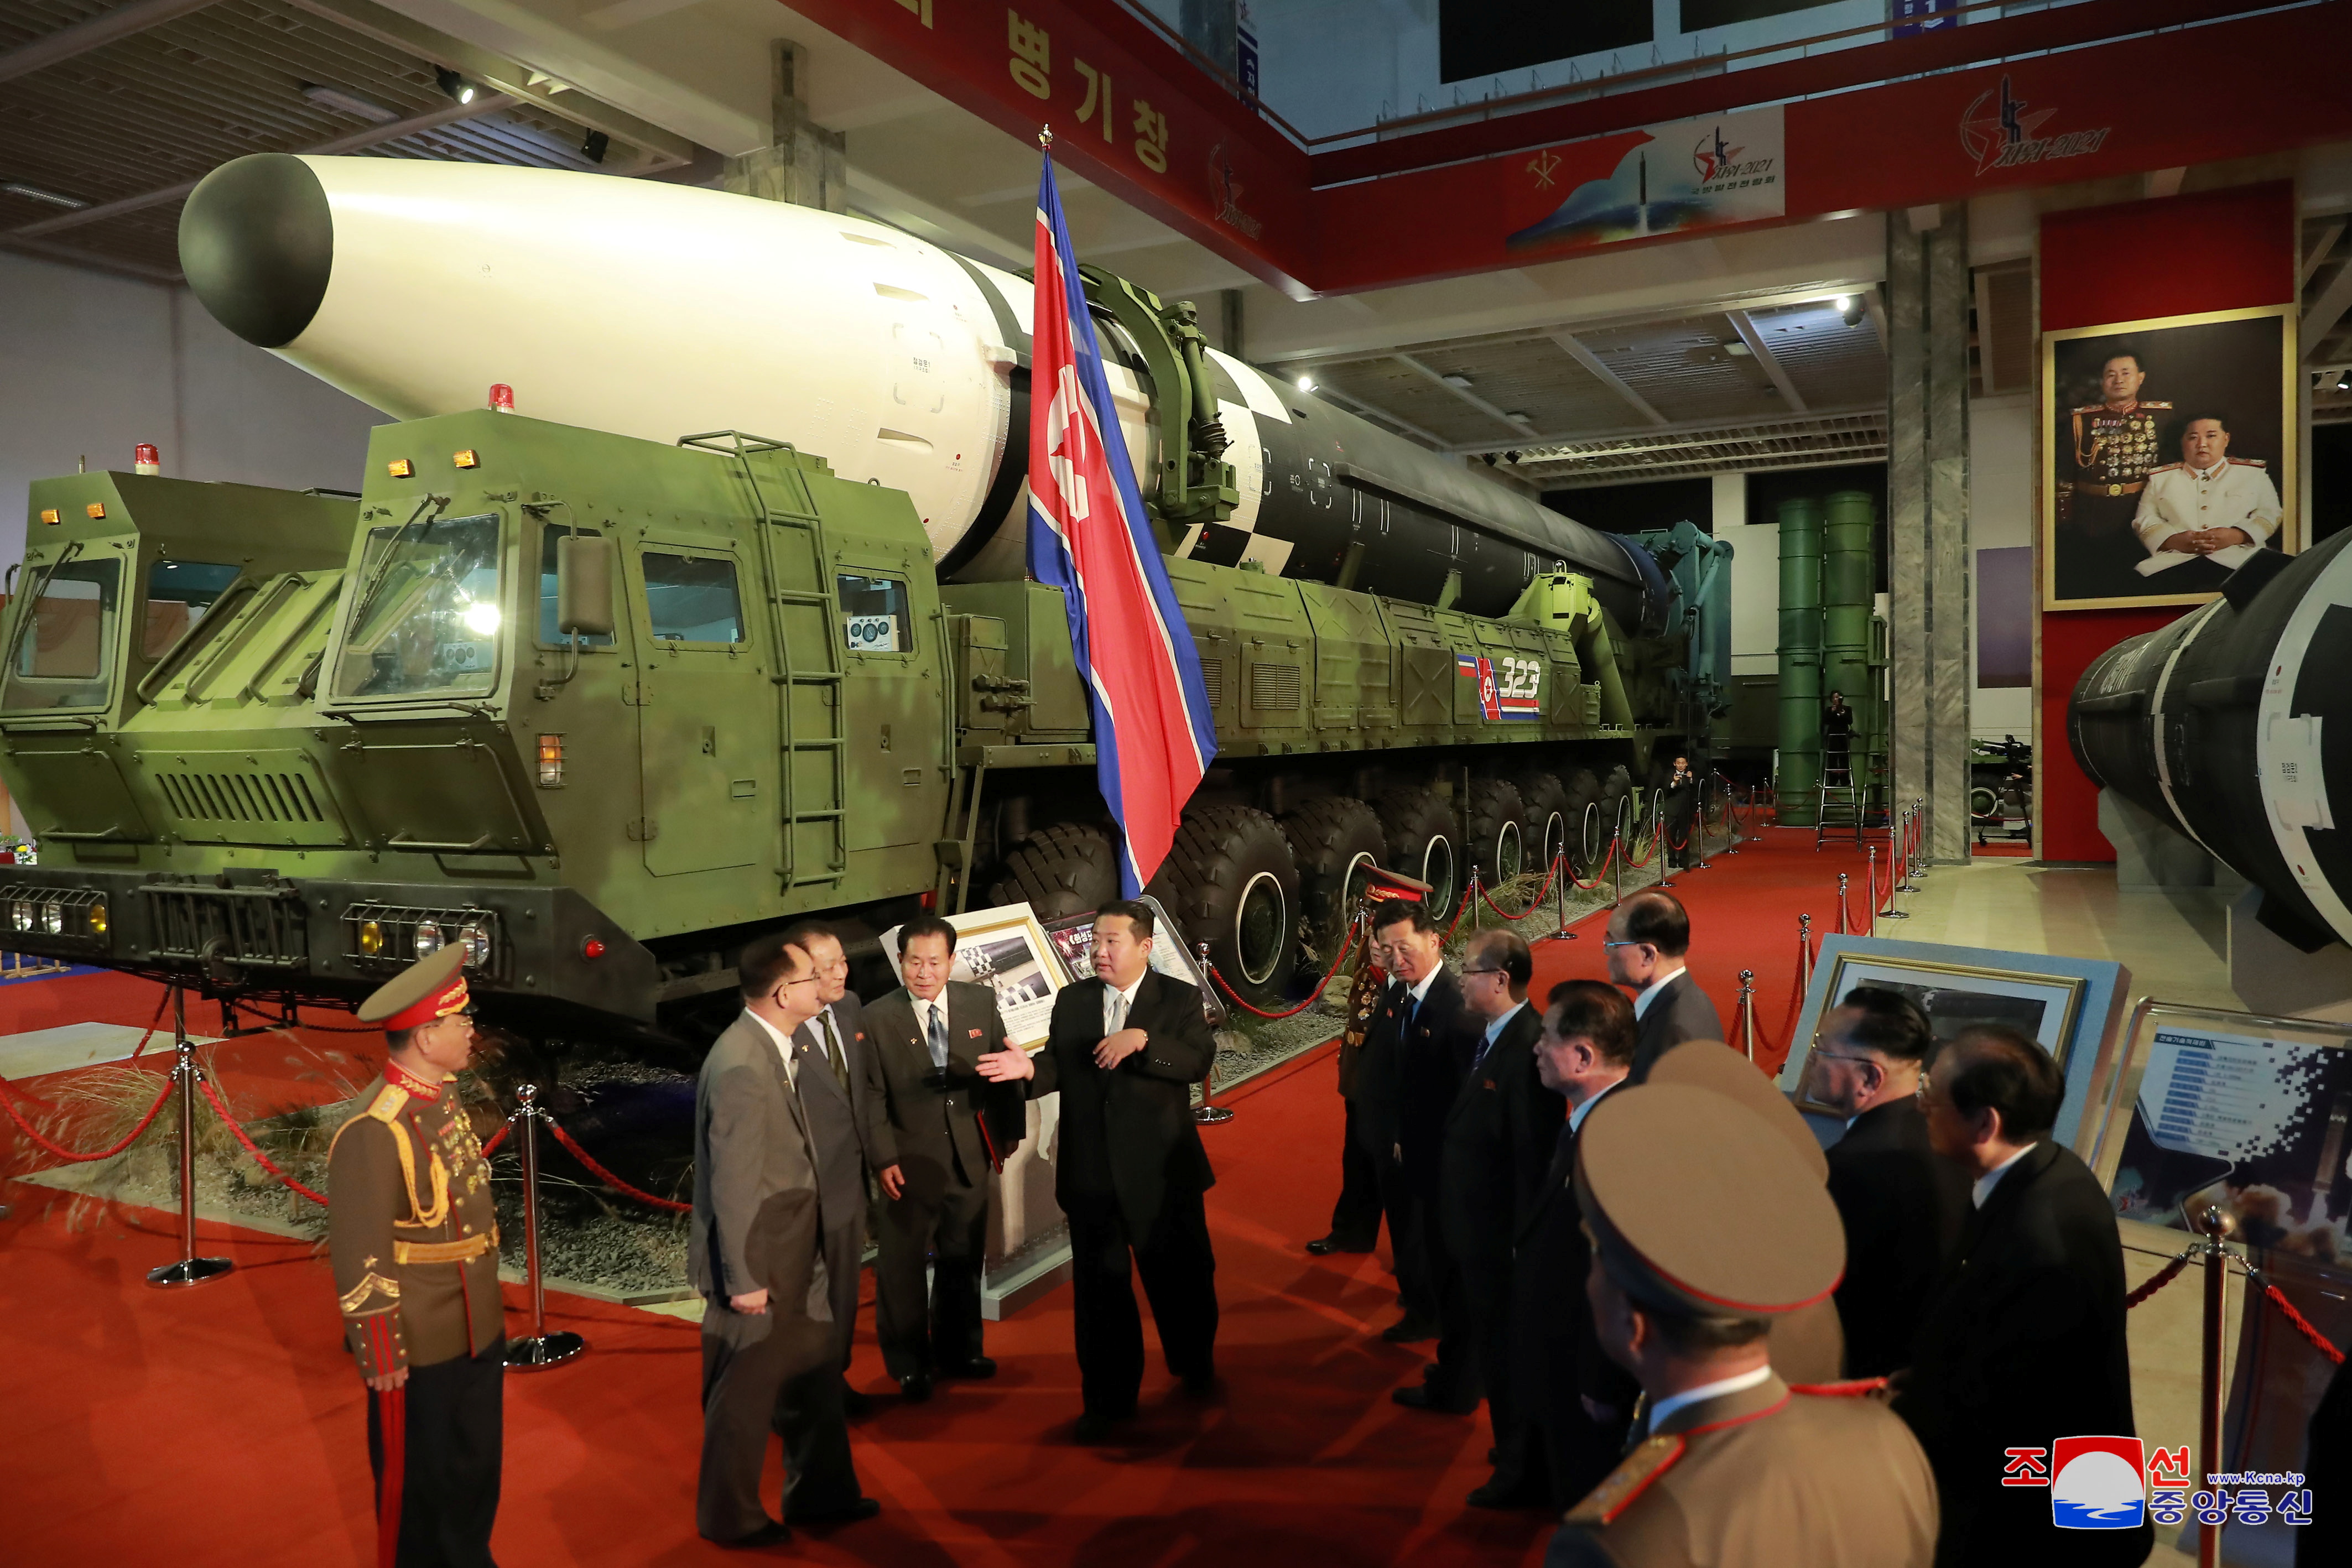 El líder de Corea del Norte, Kim Jong Un, habla con funcionarios junto a armas y vehículos militares expuestos, incluidos los misiles balísticos intercontinentales (ICBM) del país, en la Exposición de Desarrollo de Defensa, en Pyongyang, Corea del Norte, en esta foto sin fecha publicada el 12 de octubre de 2021 por la Agencia Central de Noticias de Corea del Norte (KCNA).   KCNA via REUTERS   